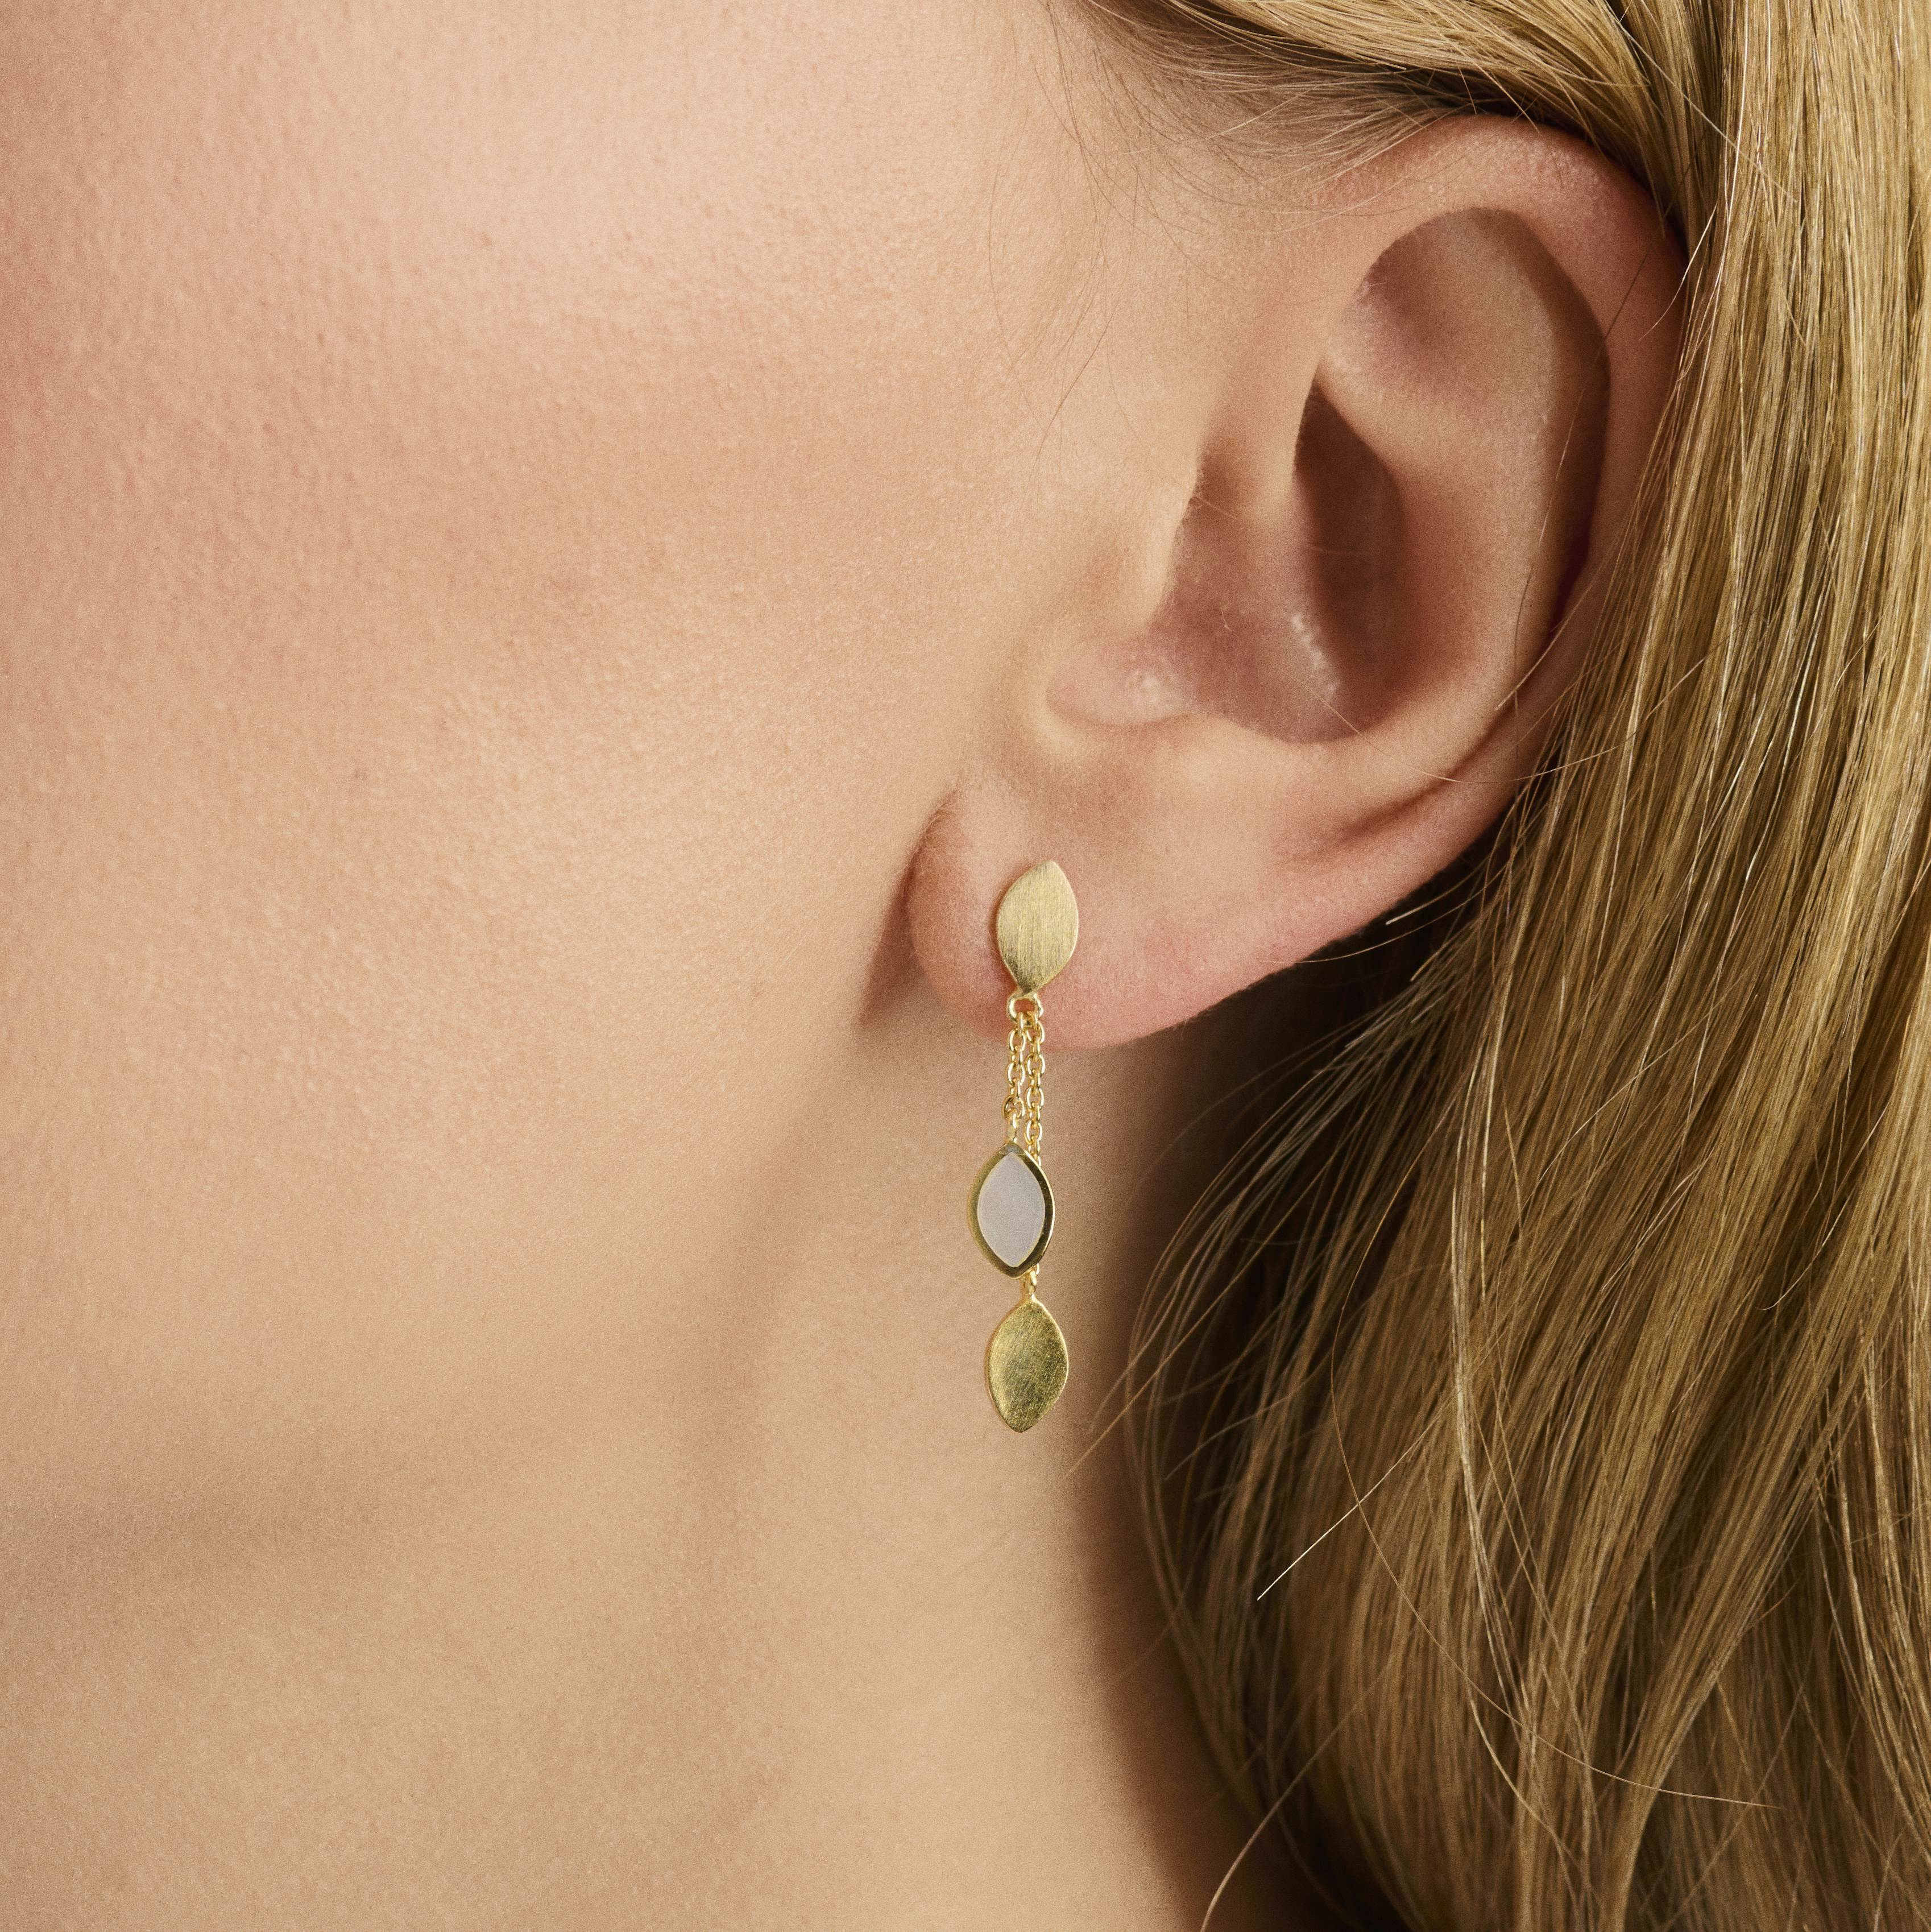 Flake Earrings von Pernille Corydon in Silber Sterling 925